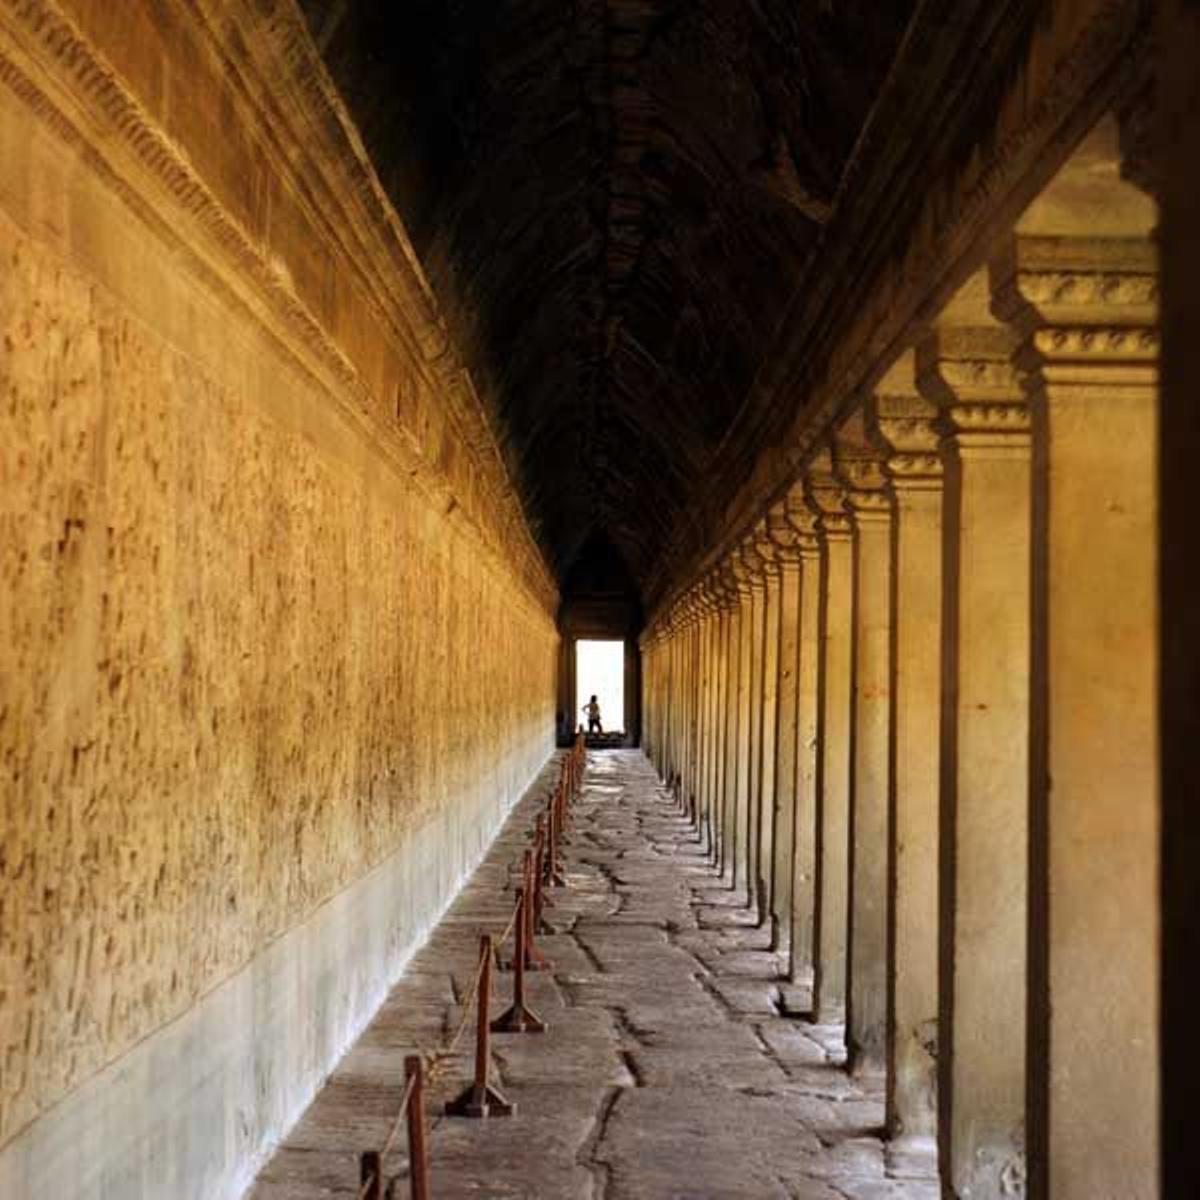 Galerías techadas en Angkor Wat.